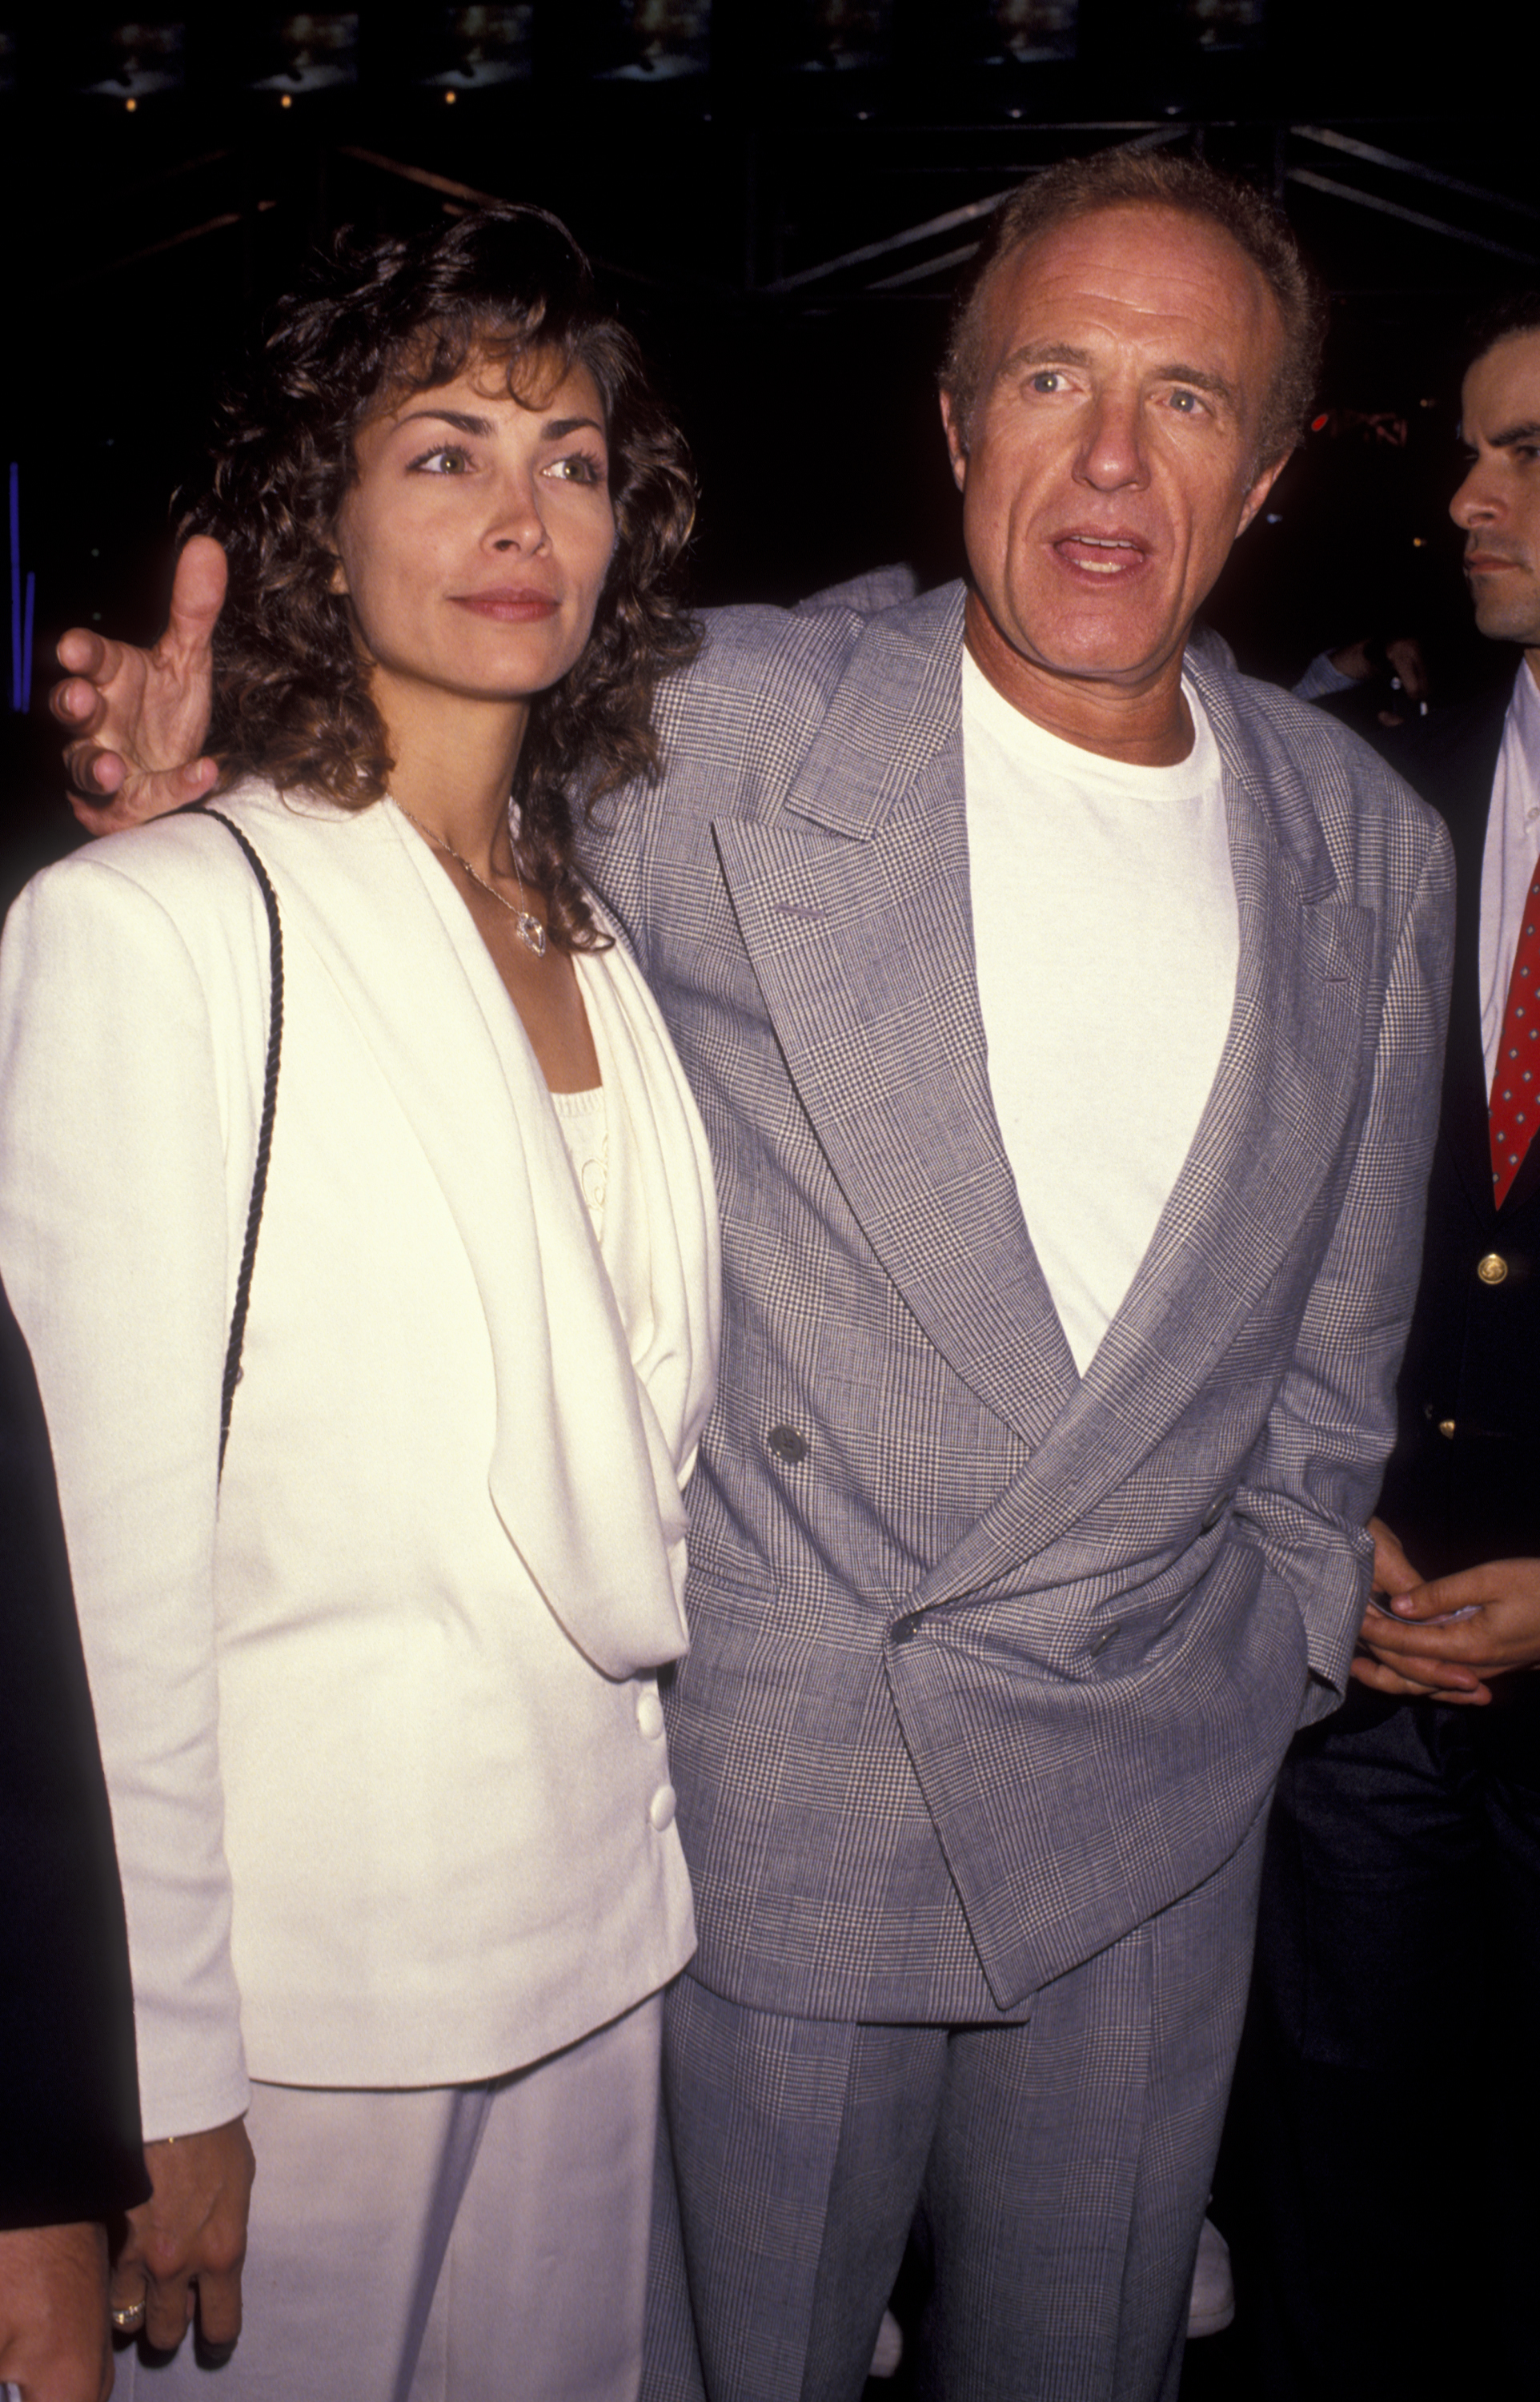 Ingrid Hajek et James Caan à la première de "Terminator 2 - Le jugement dernier" le 1er juin 1991, en Californie | Source : Getty Images